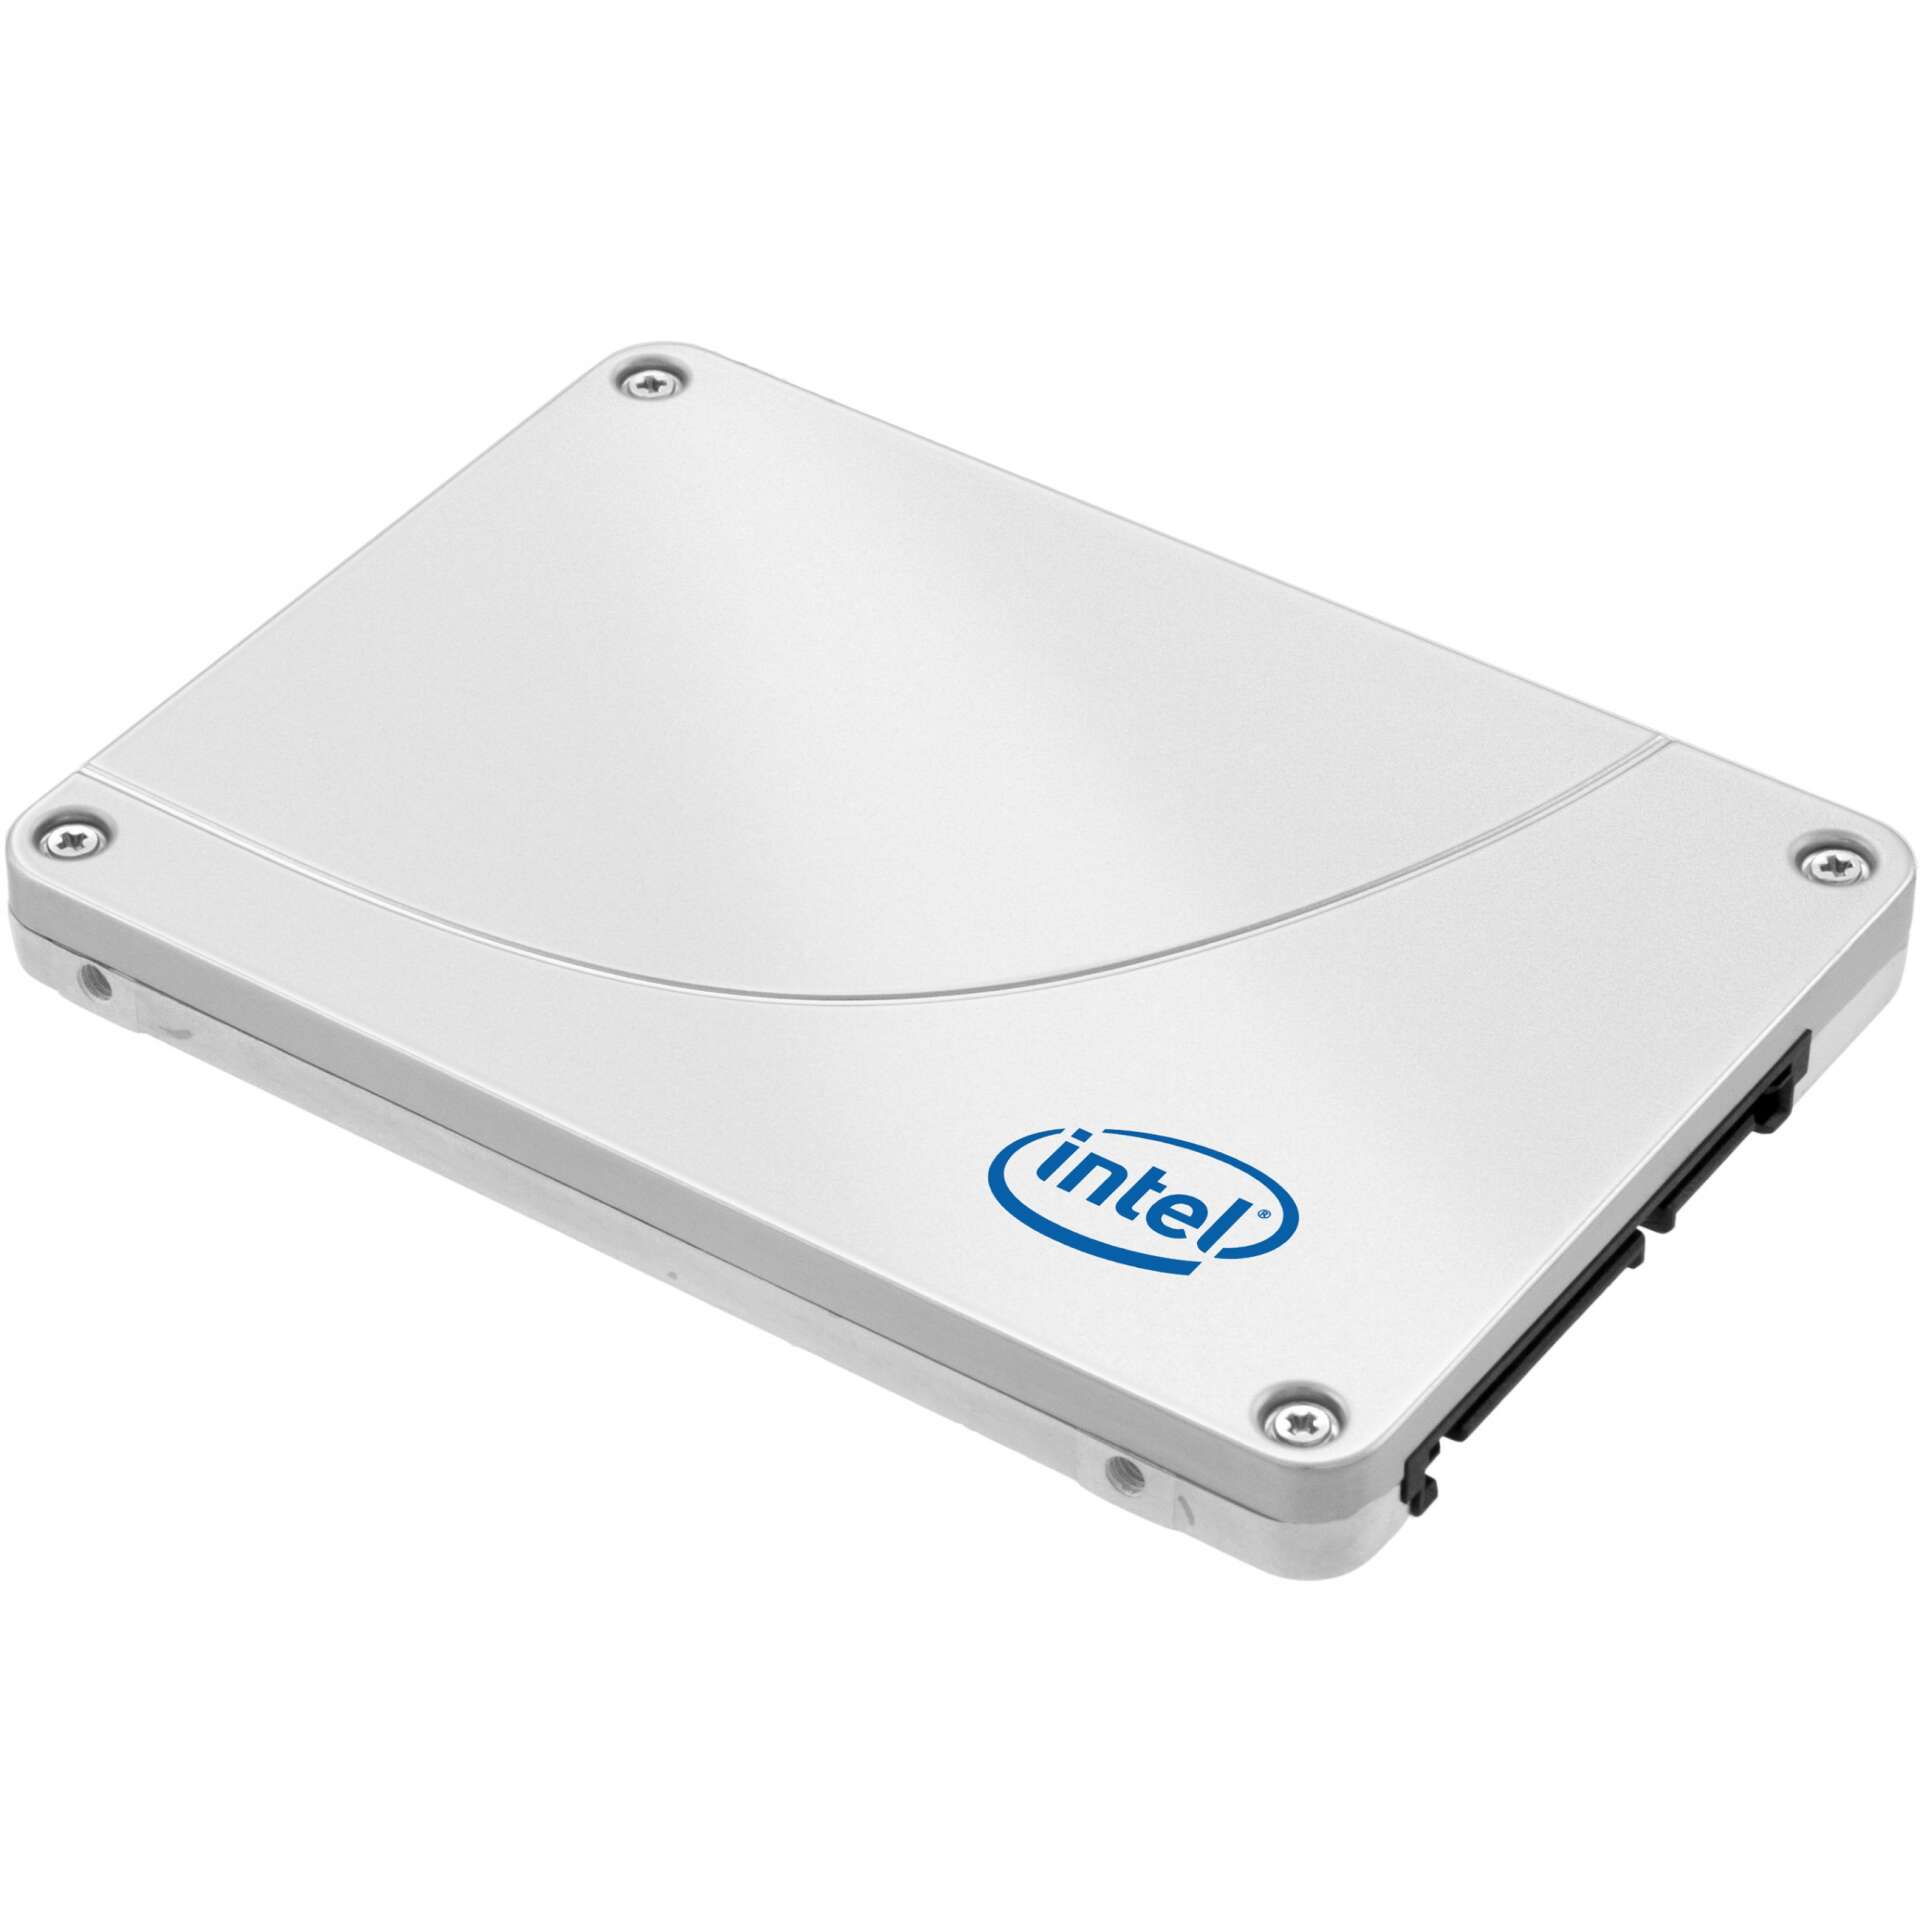 Intel d3 s4620 ssd meghajtó 2.5" 960 gb serial ata iii tlc 3d nand